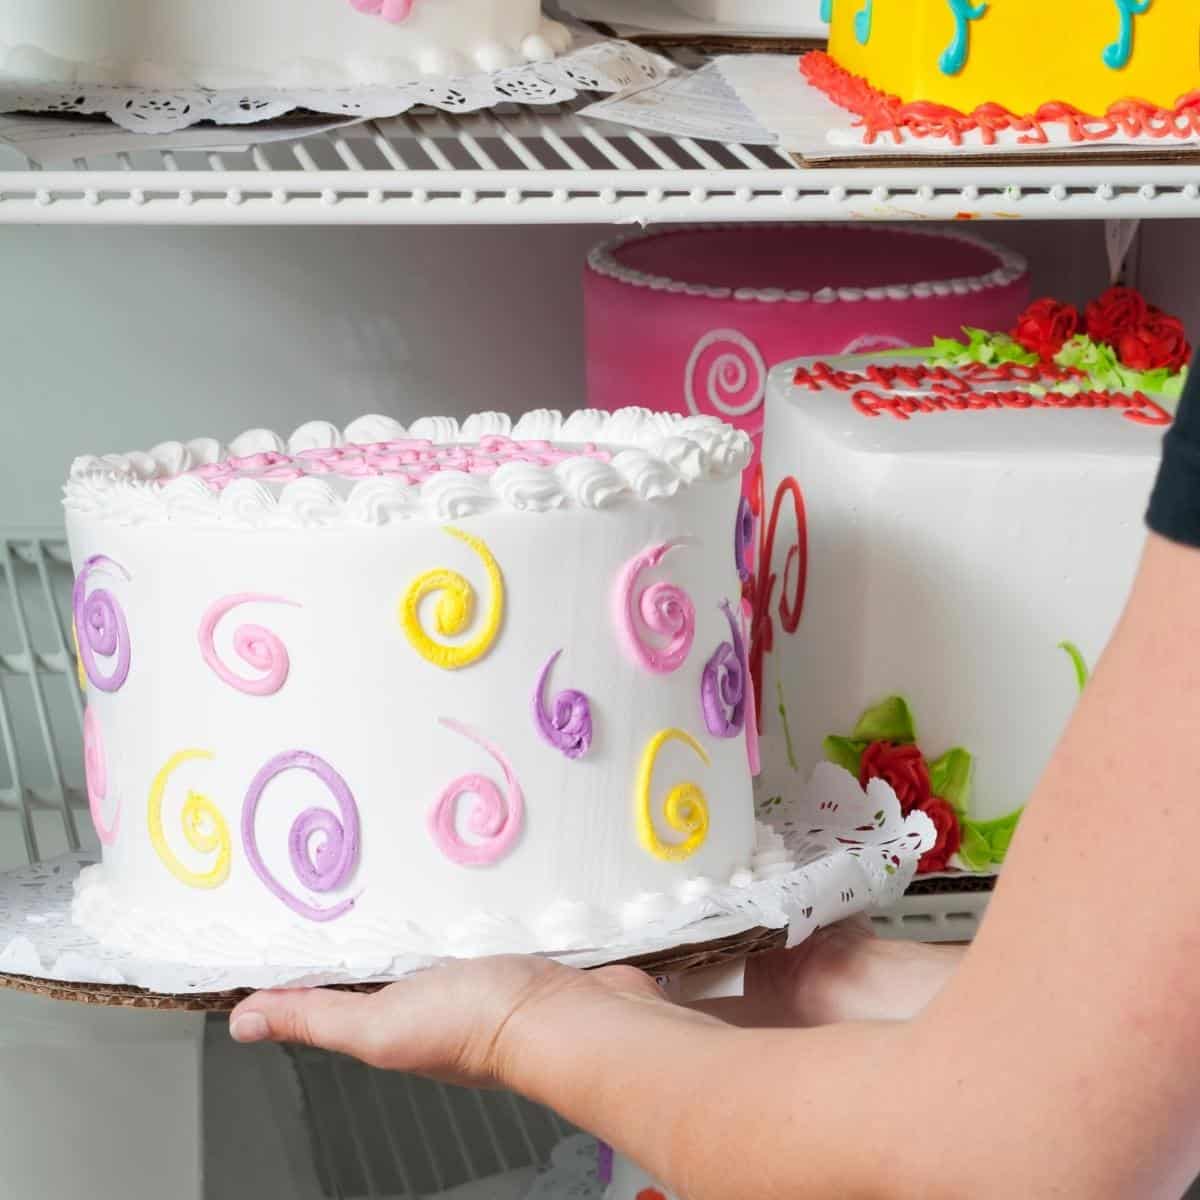 How to Store a Cake - I Scream for Buttercream